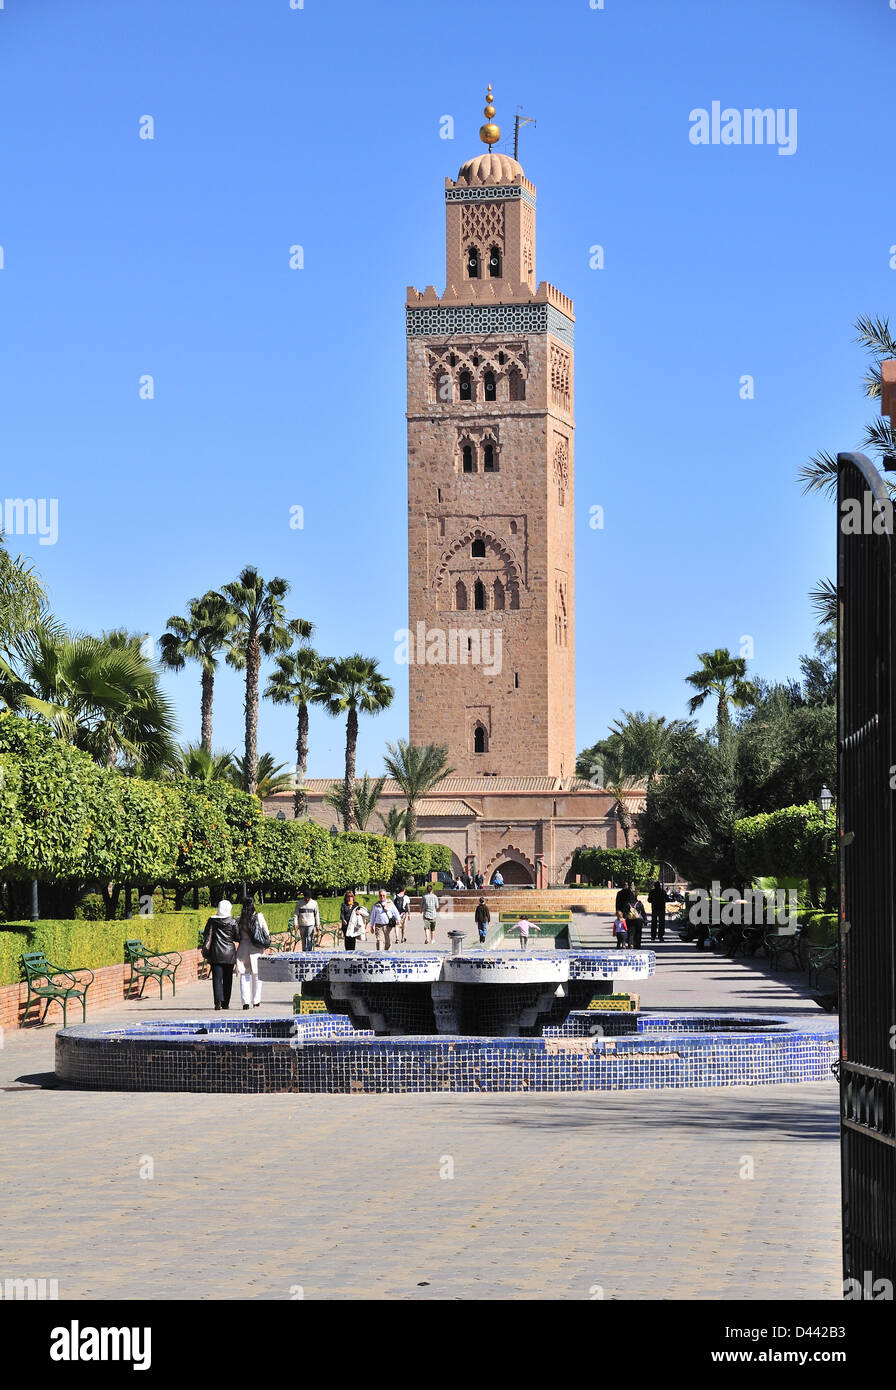 Minaret of the Koutoubia Mosque with people walking through the Koutoubia Gardens, Marrakech (Marrakesh) Morocco Stock Photo